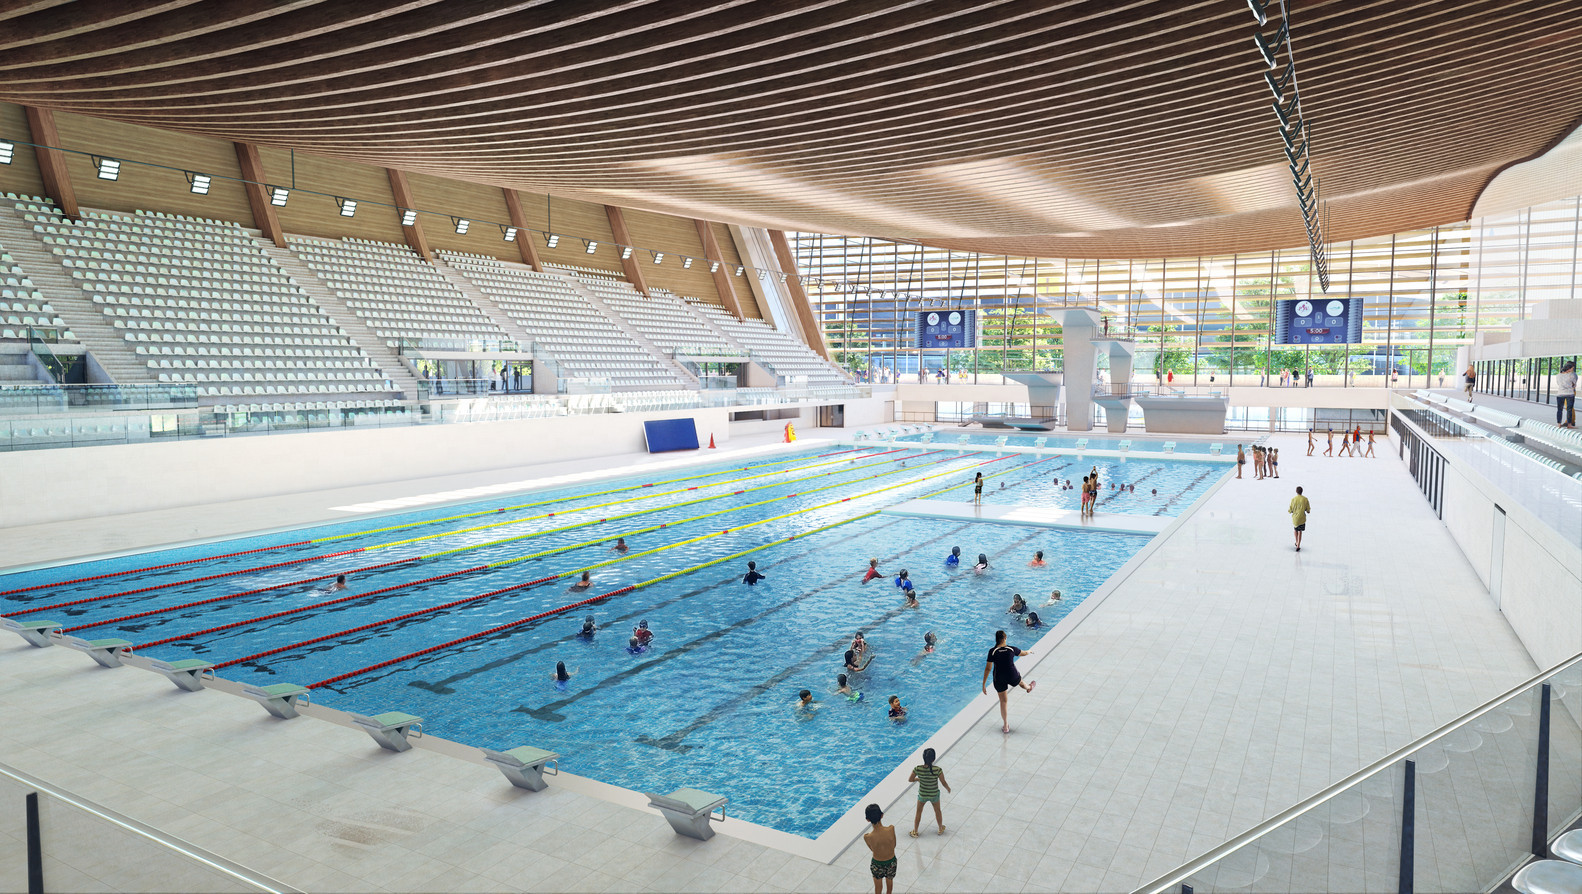 Aquatic Centre Paris 2024 VenhoevenCS And Ateliers 4 